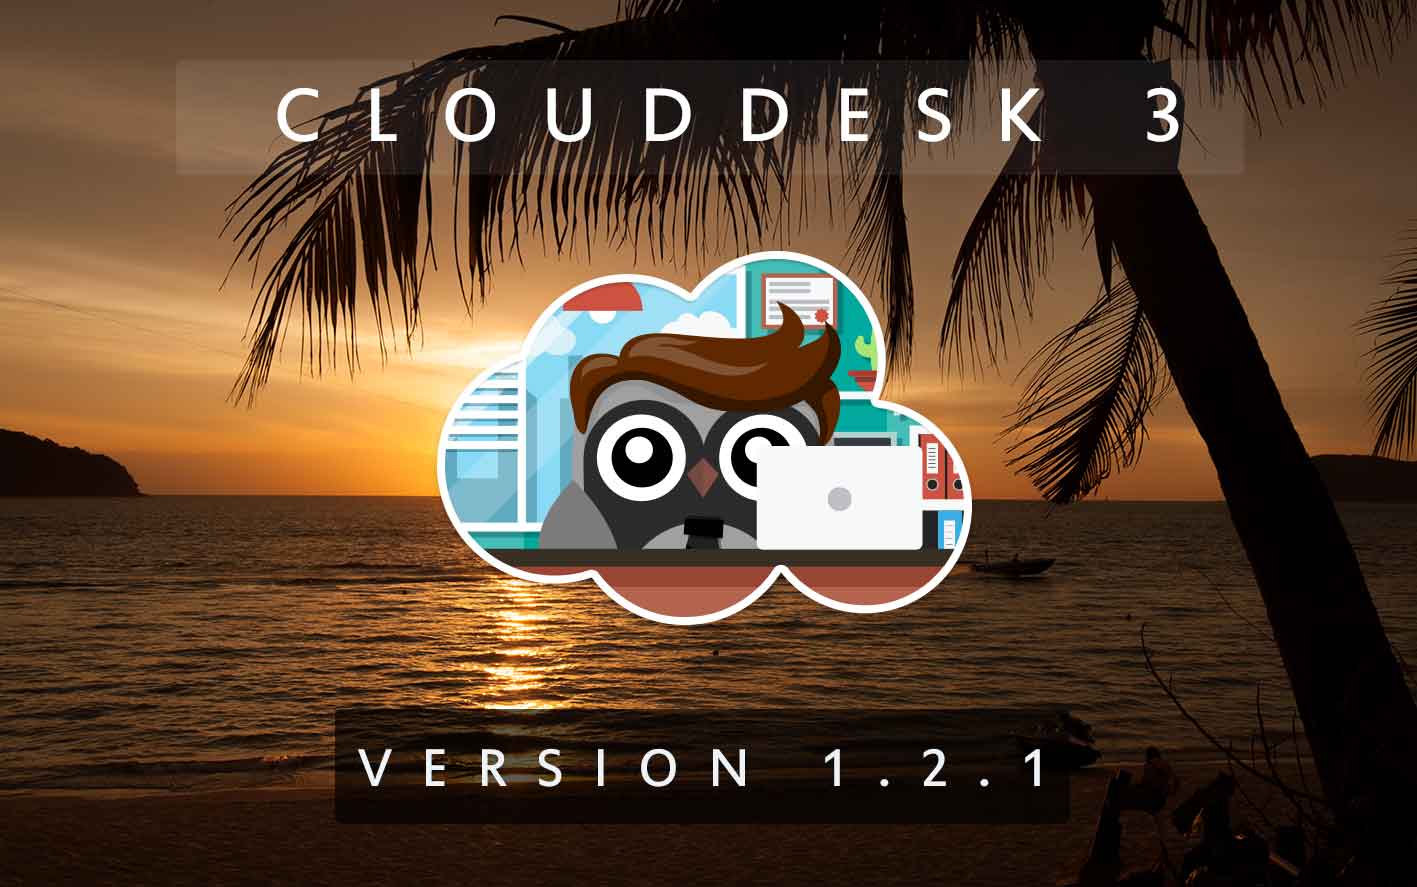 Cloud Desk 3 - Version 1.2.1